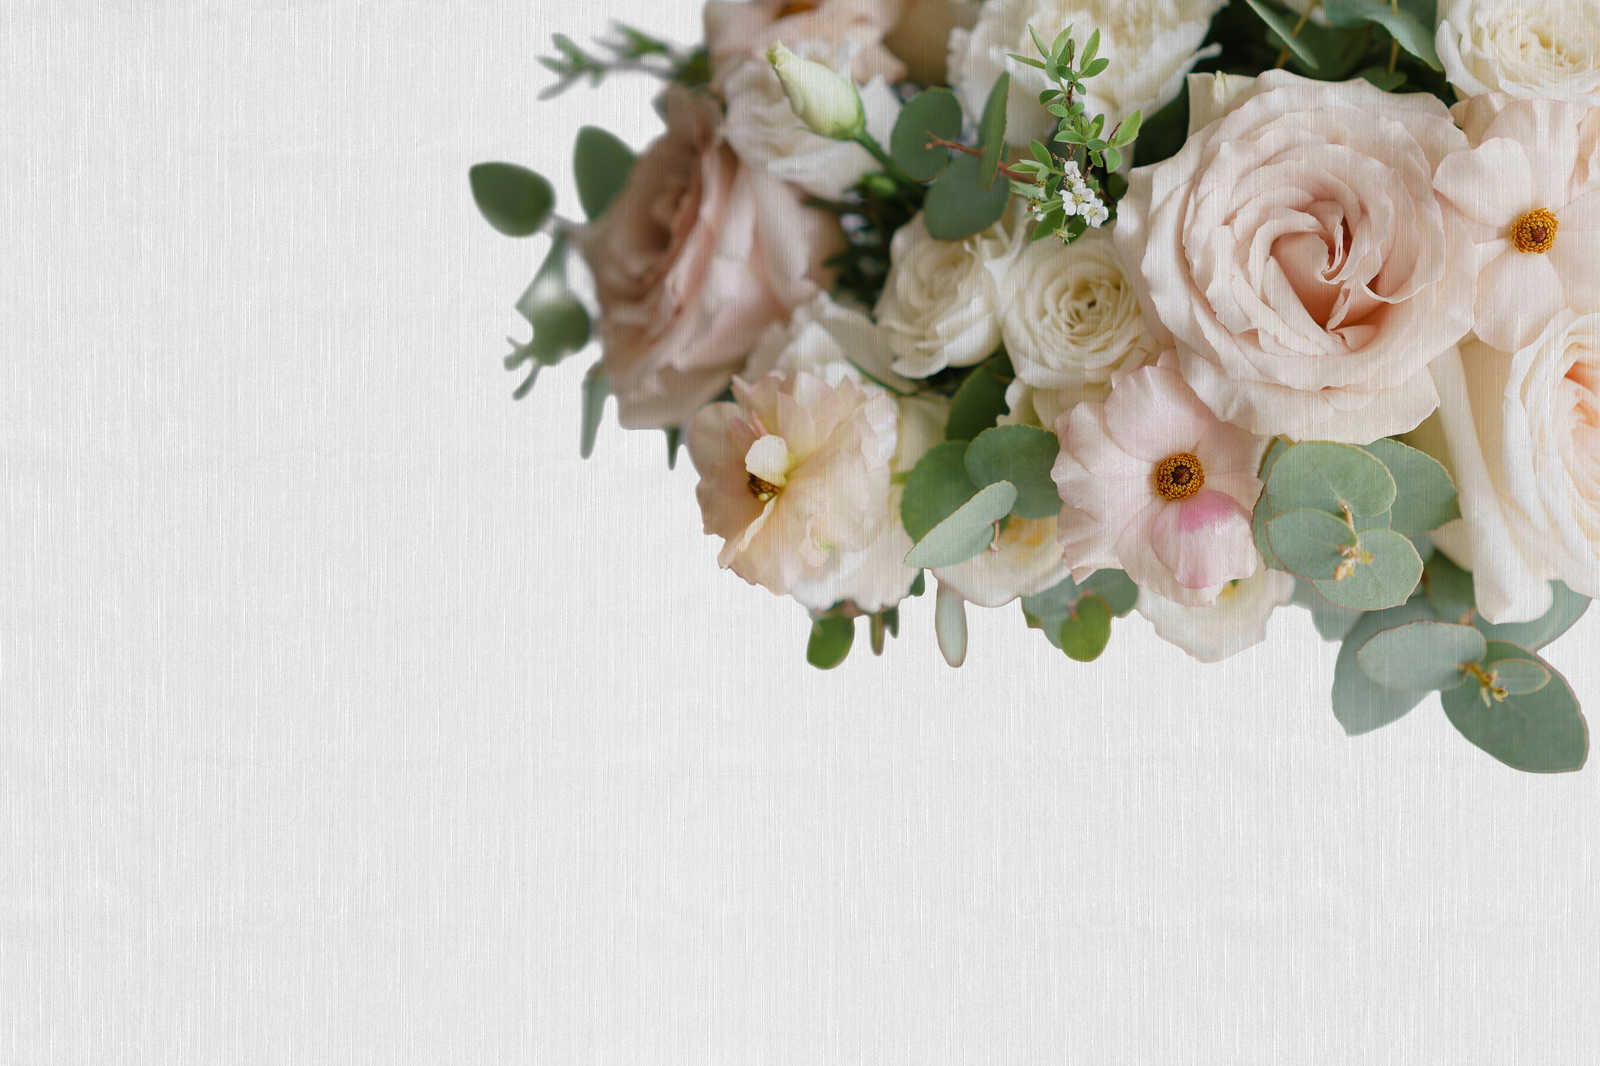             Leinwandbild Blumenbouquet aus Rosen und Eukalyptus – 0,90 m x 0,60 m
        